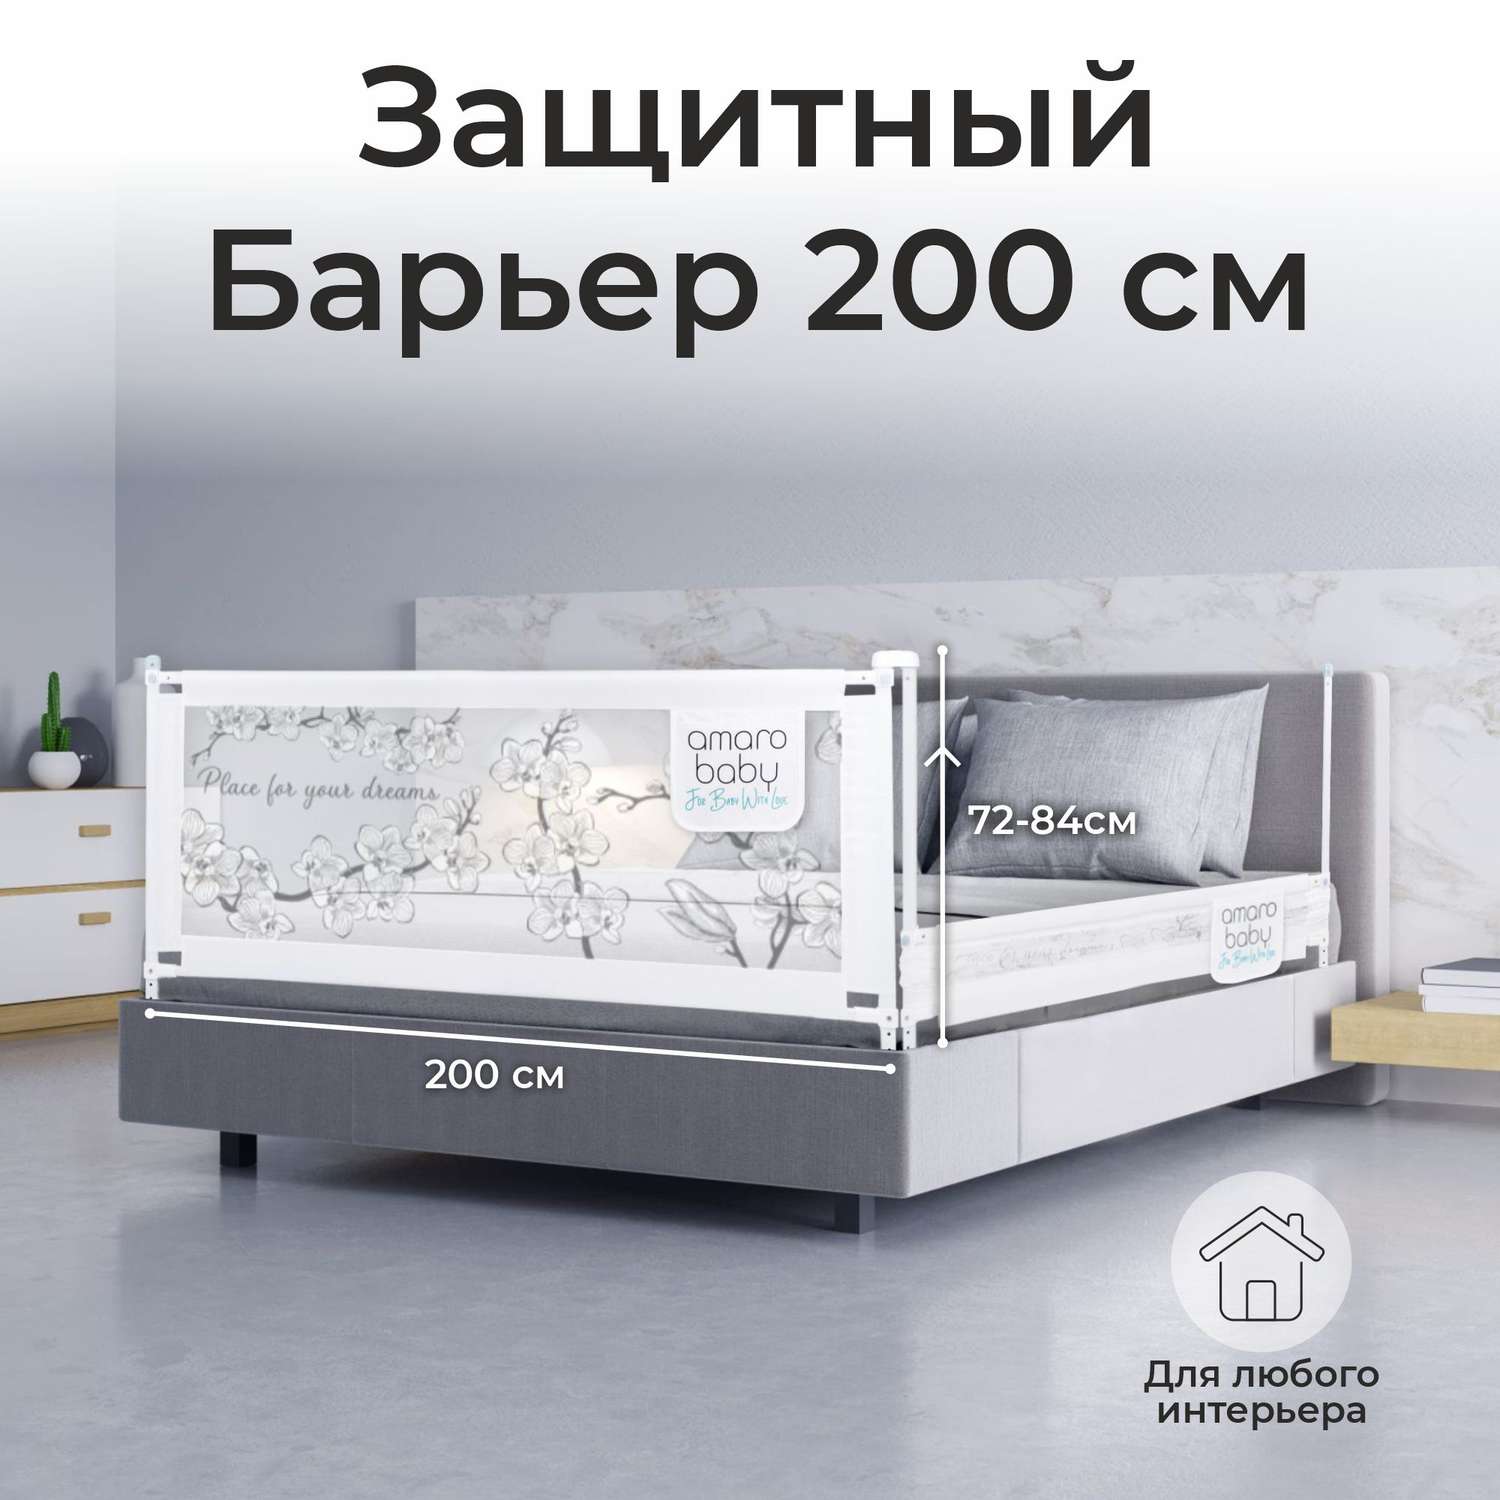 Барьер защитный для кровати AmaroBaby белый 200 см - фото 1